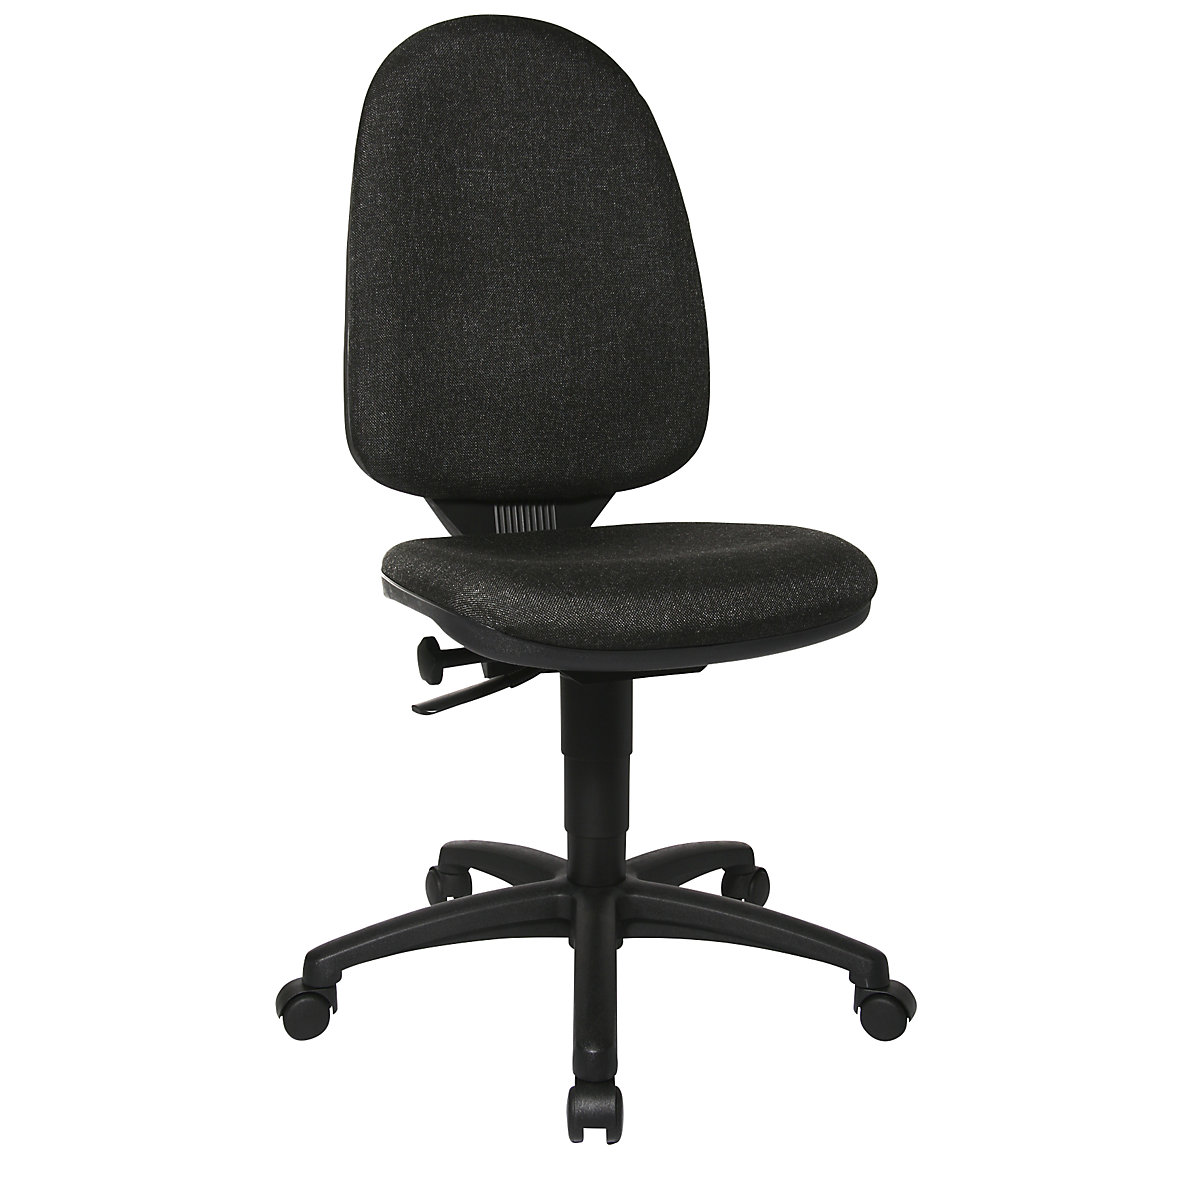 Standard swivel chair – Topstar